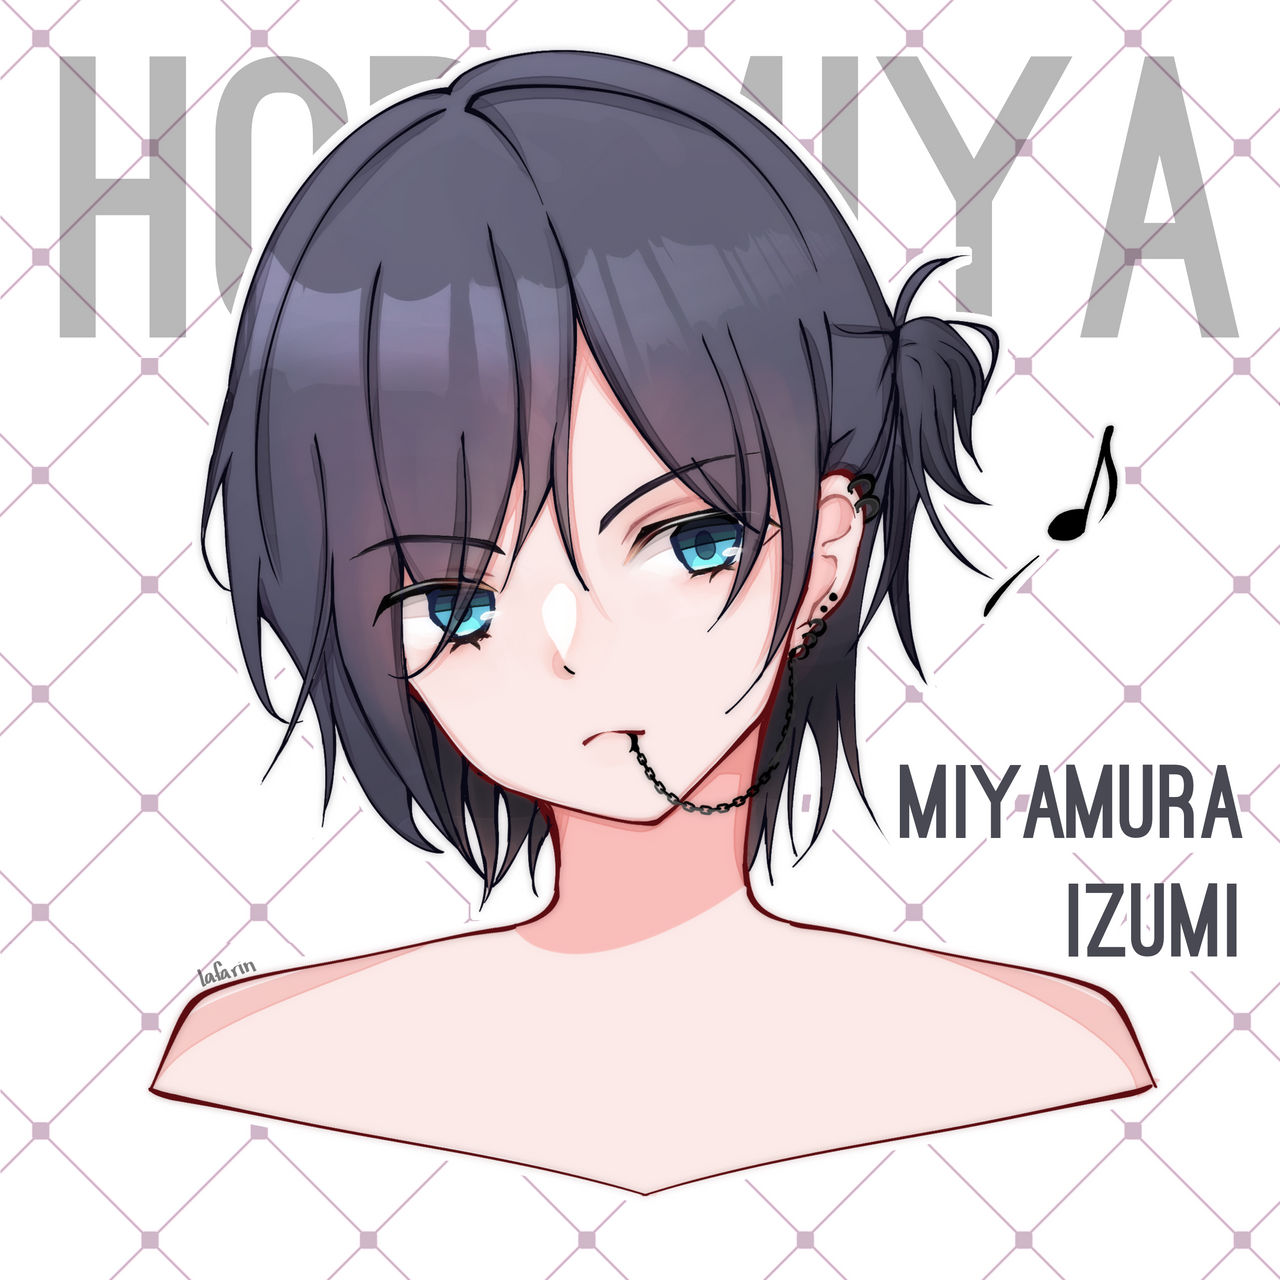 Short-haired Izumi Miyamura  Horimiya, Anime, Anime character drawing